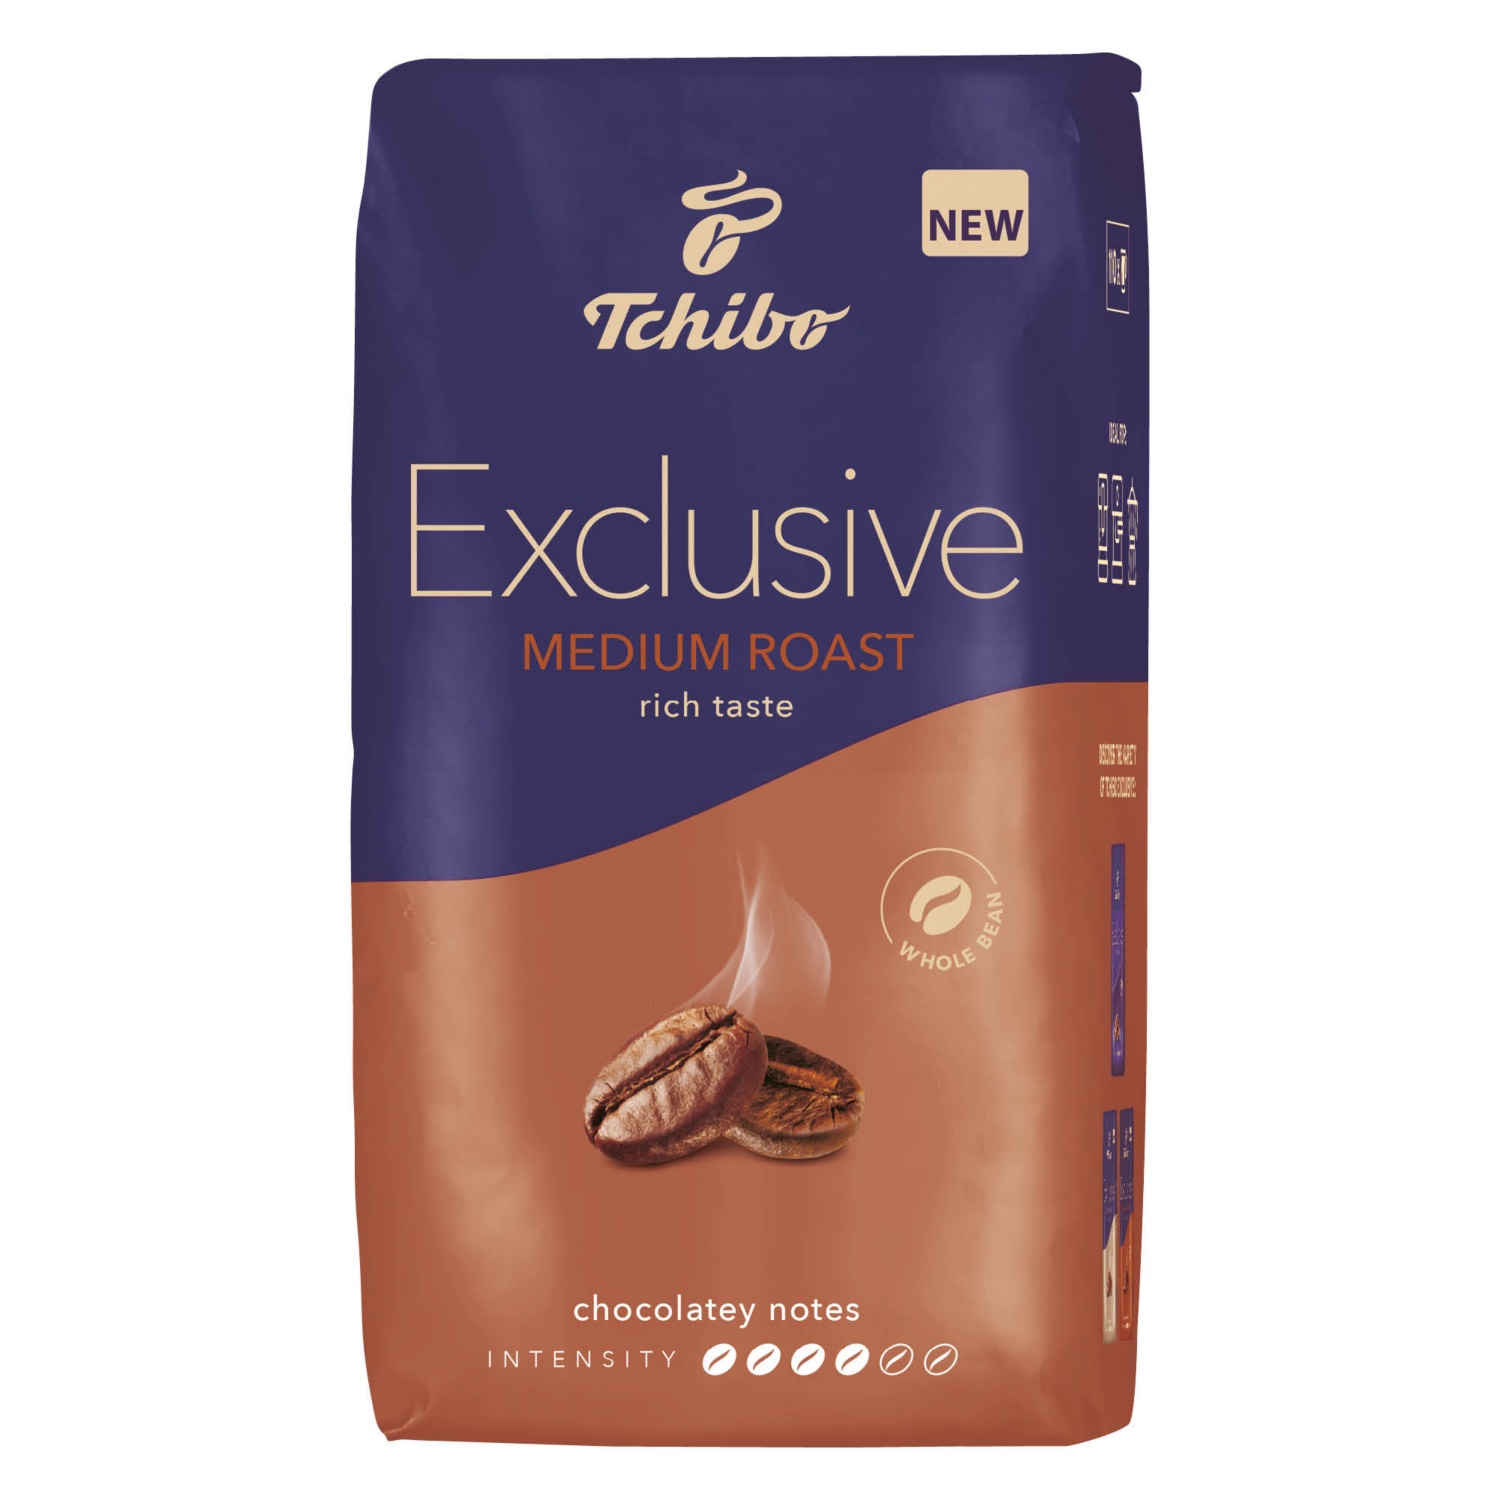 TCHIBO Exclusive szemes kávé, 1 kg, Medium Roast